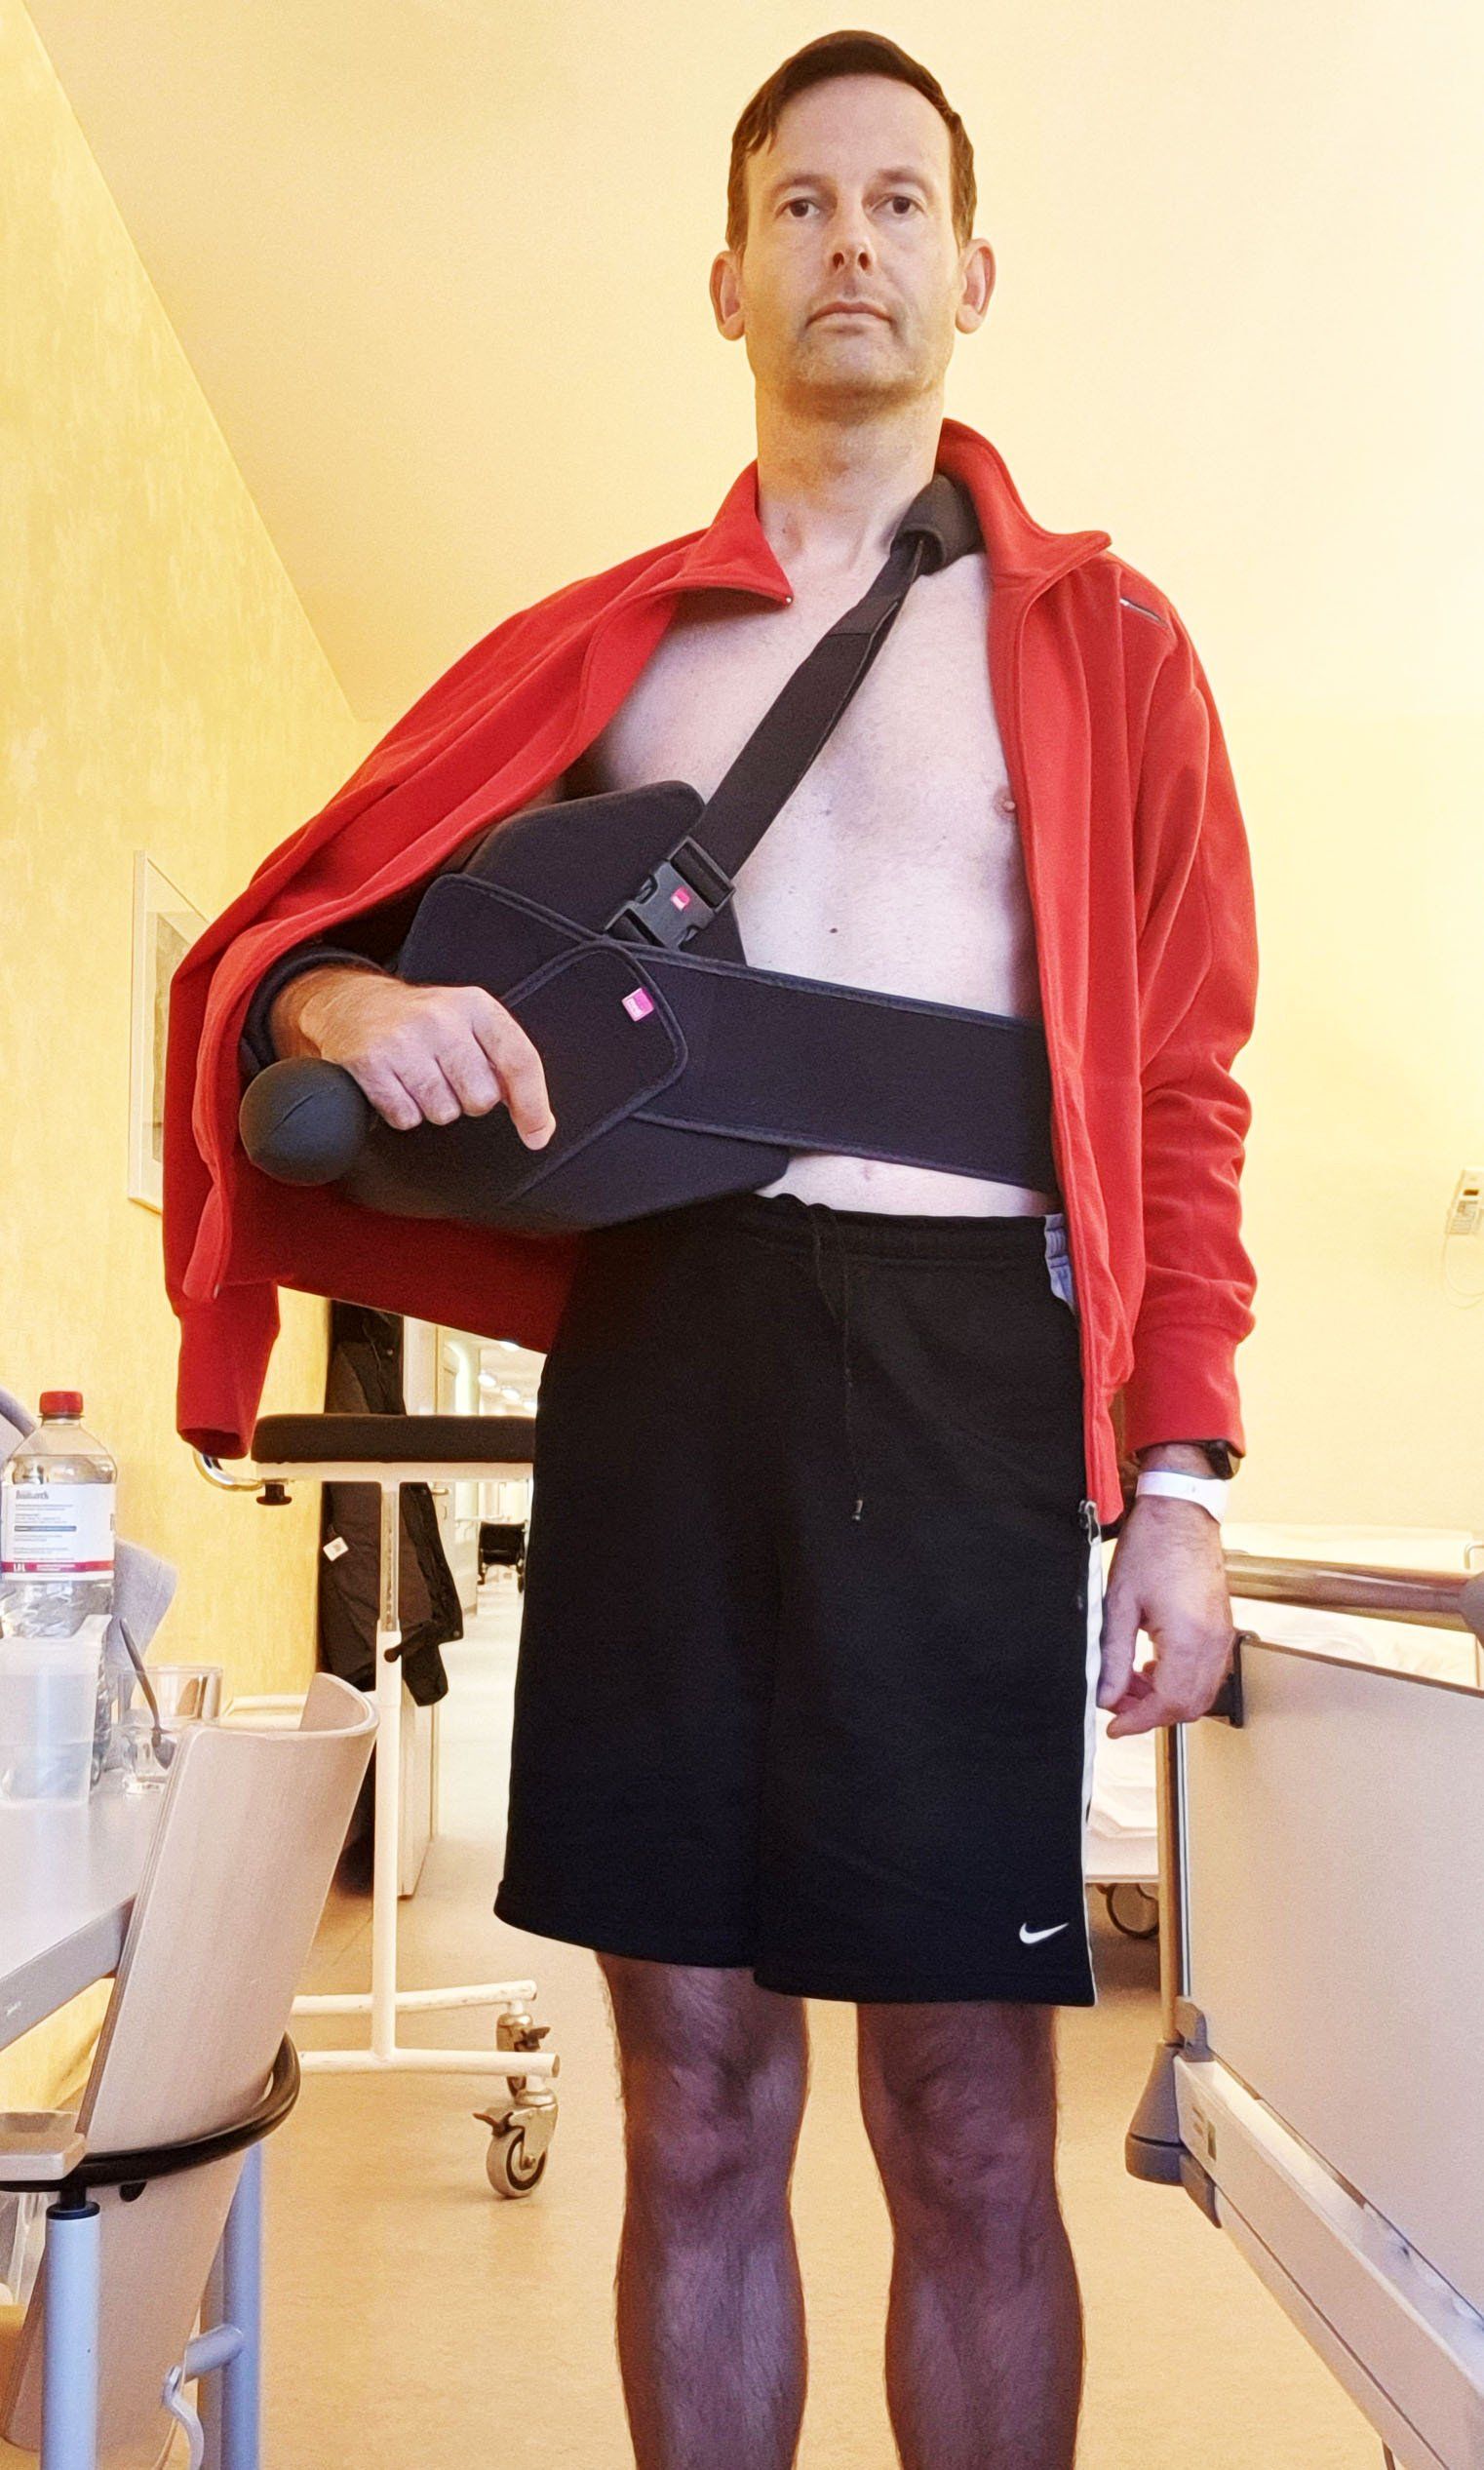 Foto von Jan im Krankenhaus. Er trägt eine kurze Sporthose und einen roten Pulli mit Reißverschluss. Wie eine Tasche trägt er rechts auf der Hüfte einen enormen Block aus weichem Material, auf dem sein rechter Arm ruht. Dadurch passt der Pulli nicht mehr und lässt seine Brust frei.